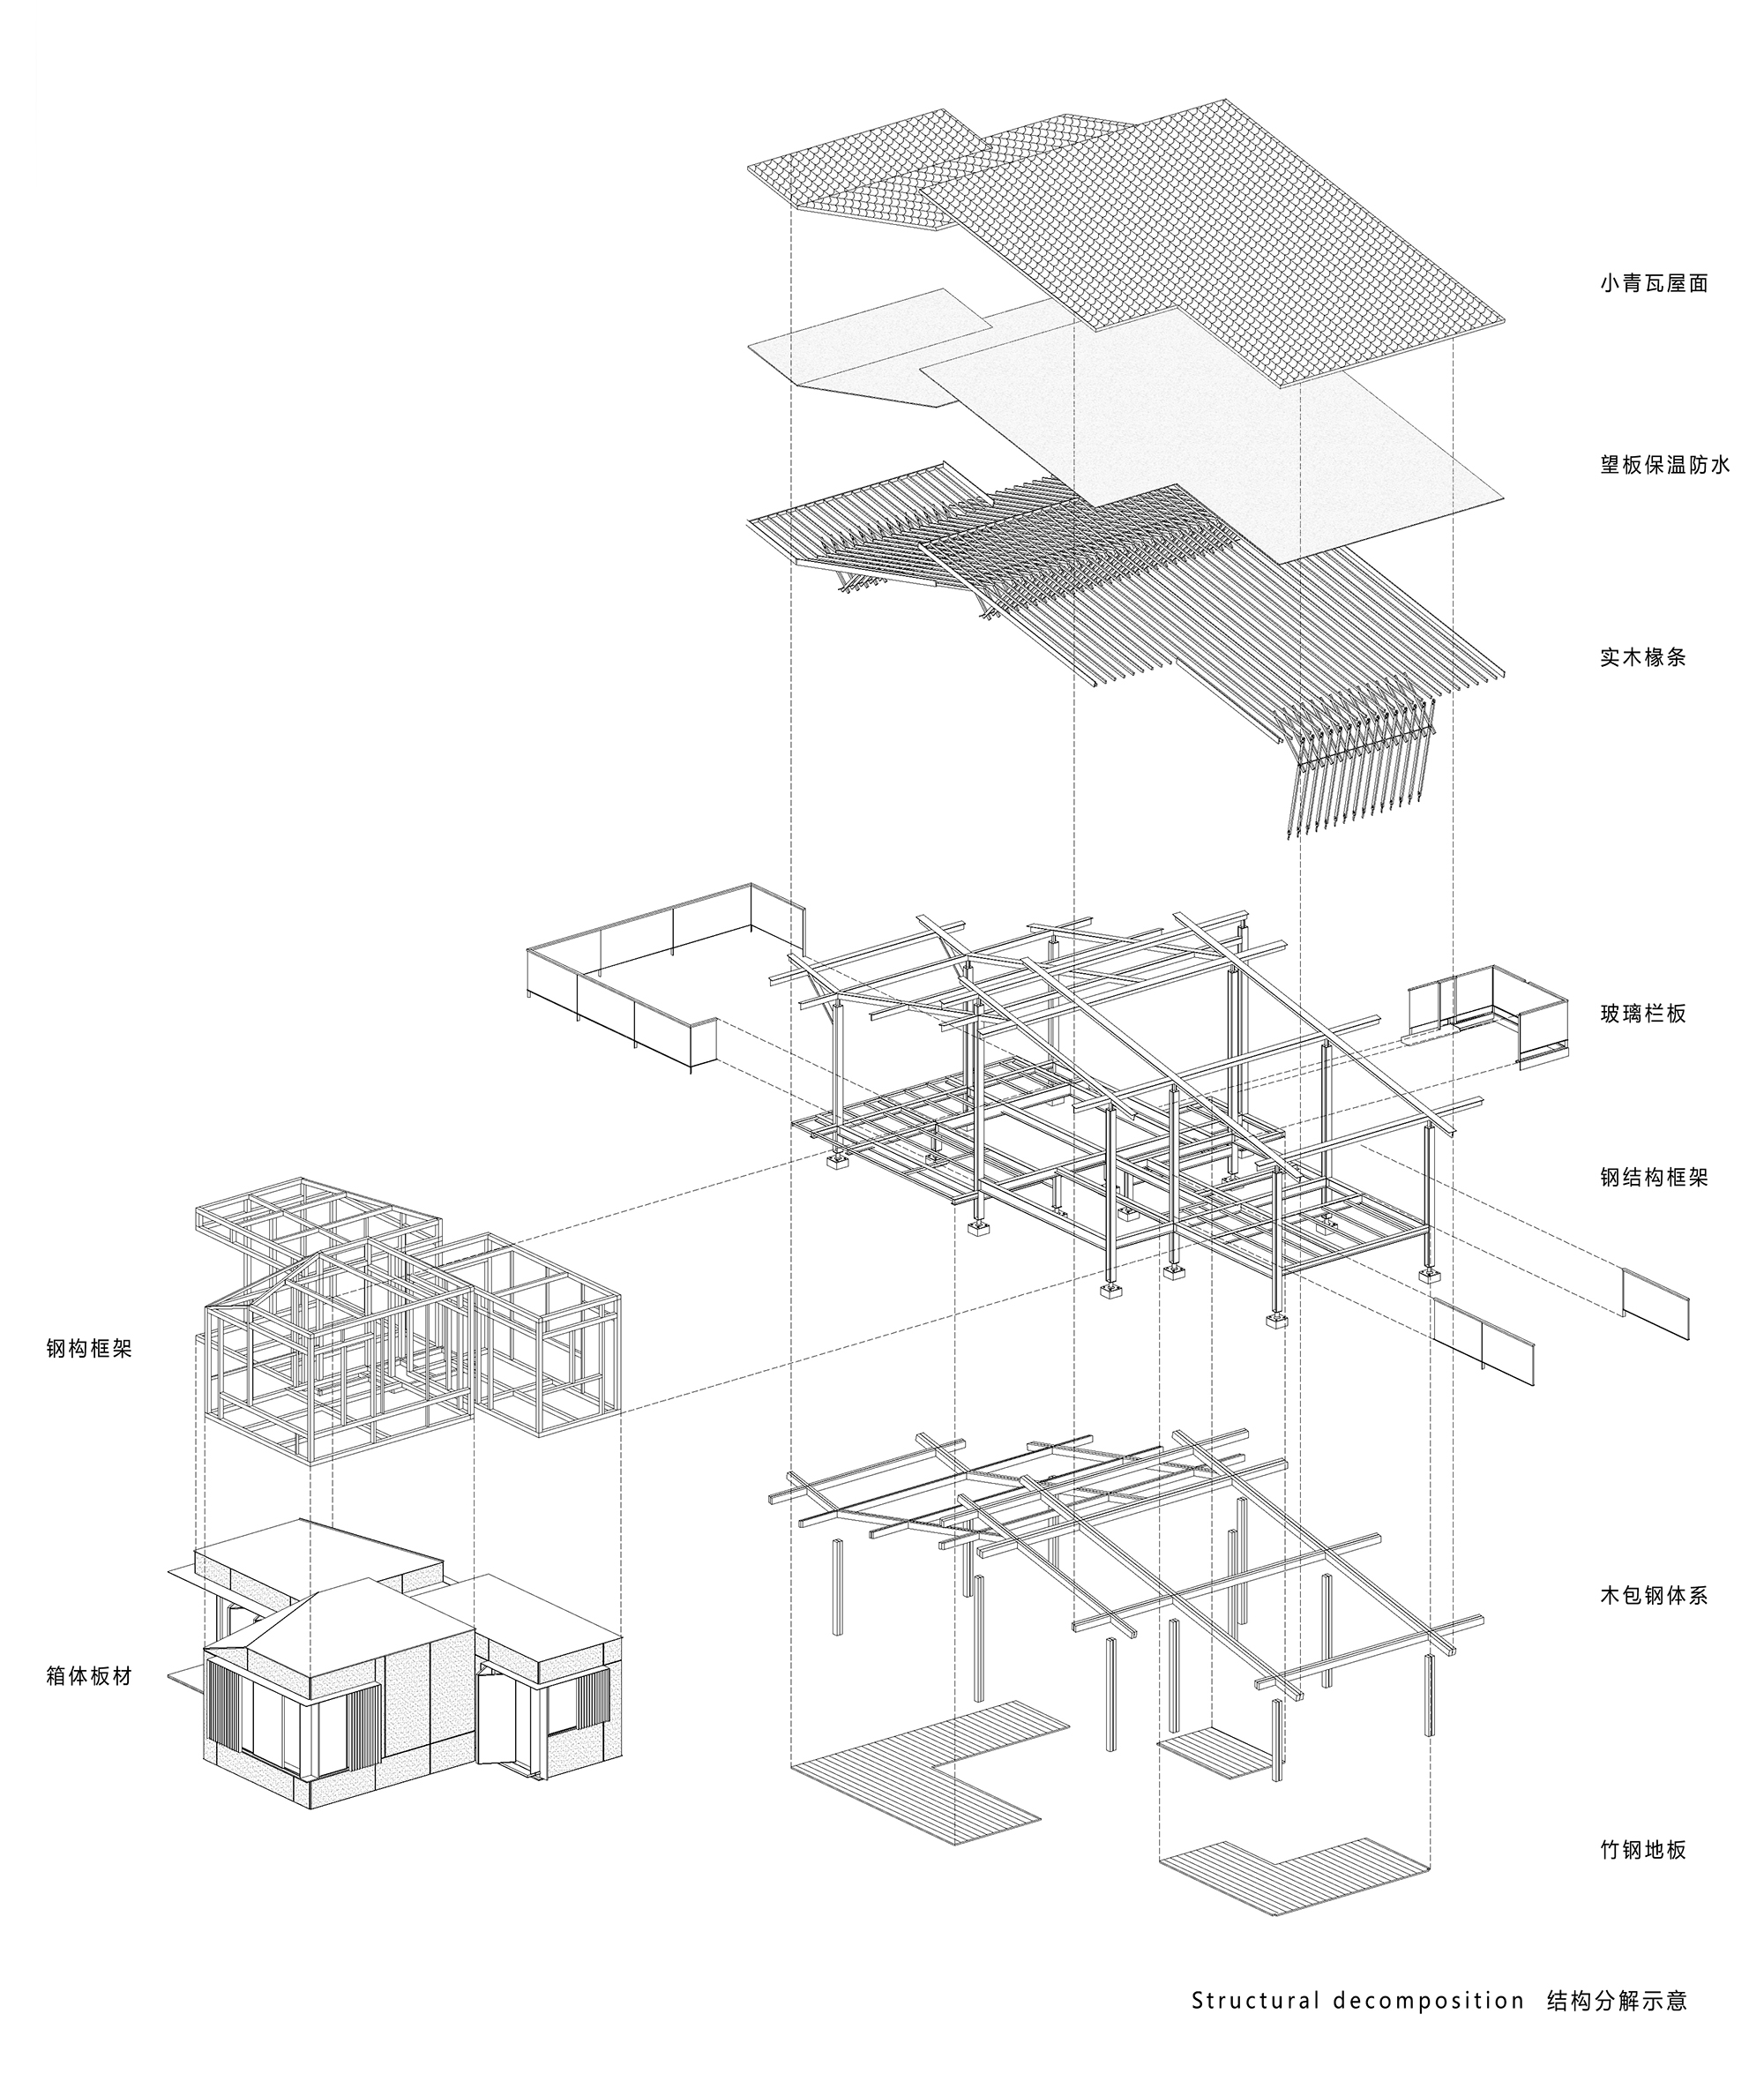 34.结构分解示意图 Exploded Structural Detail Diagram.jpg